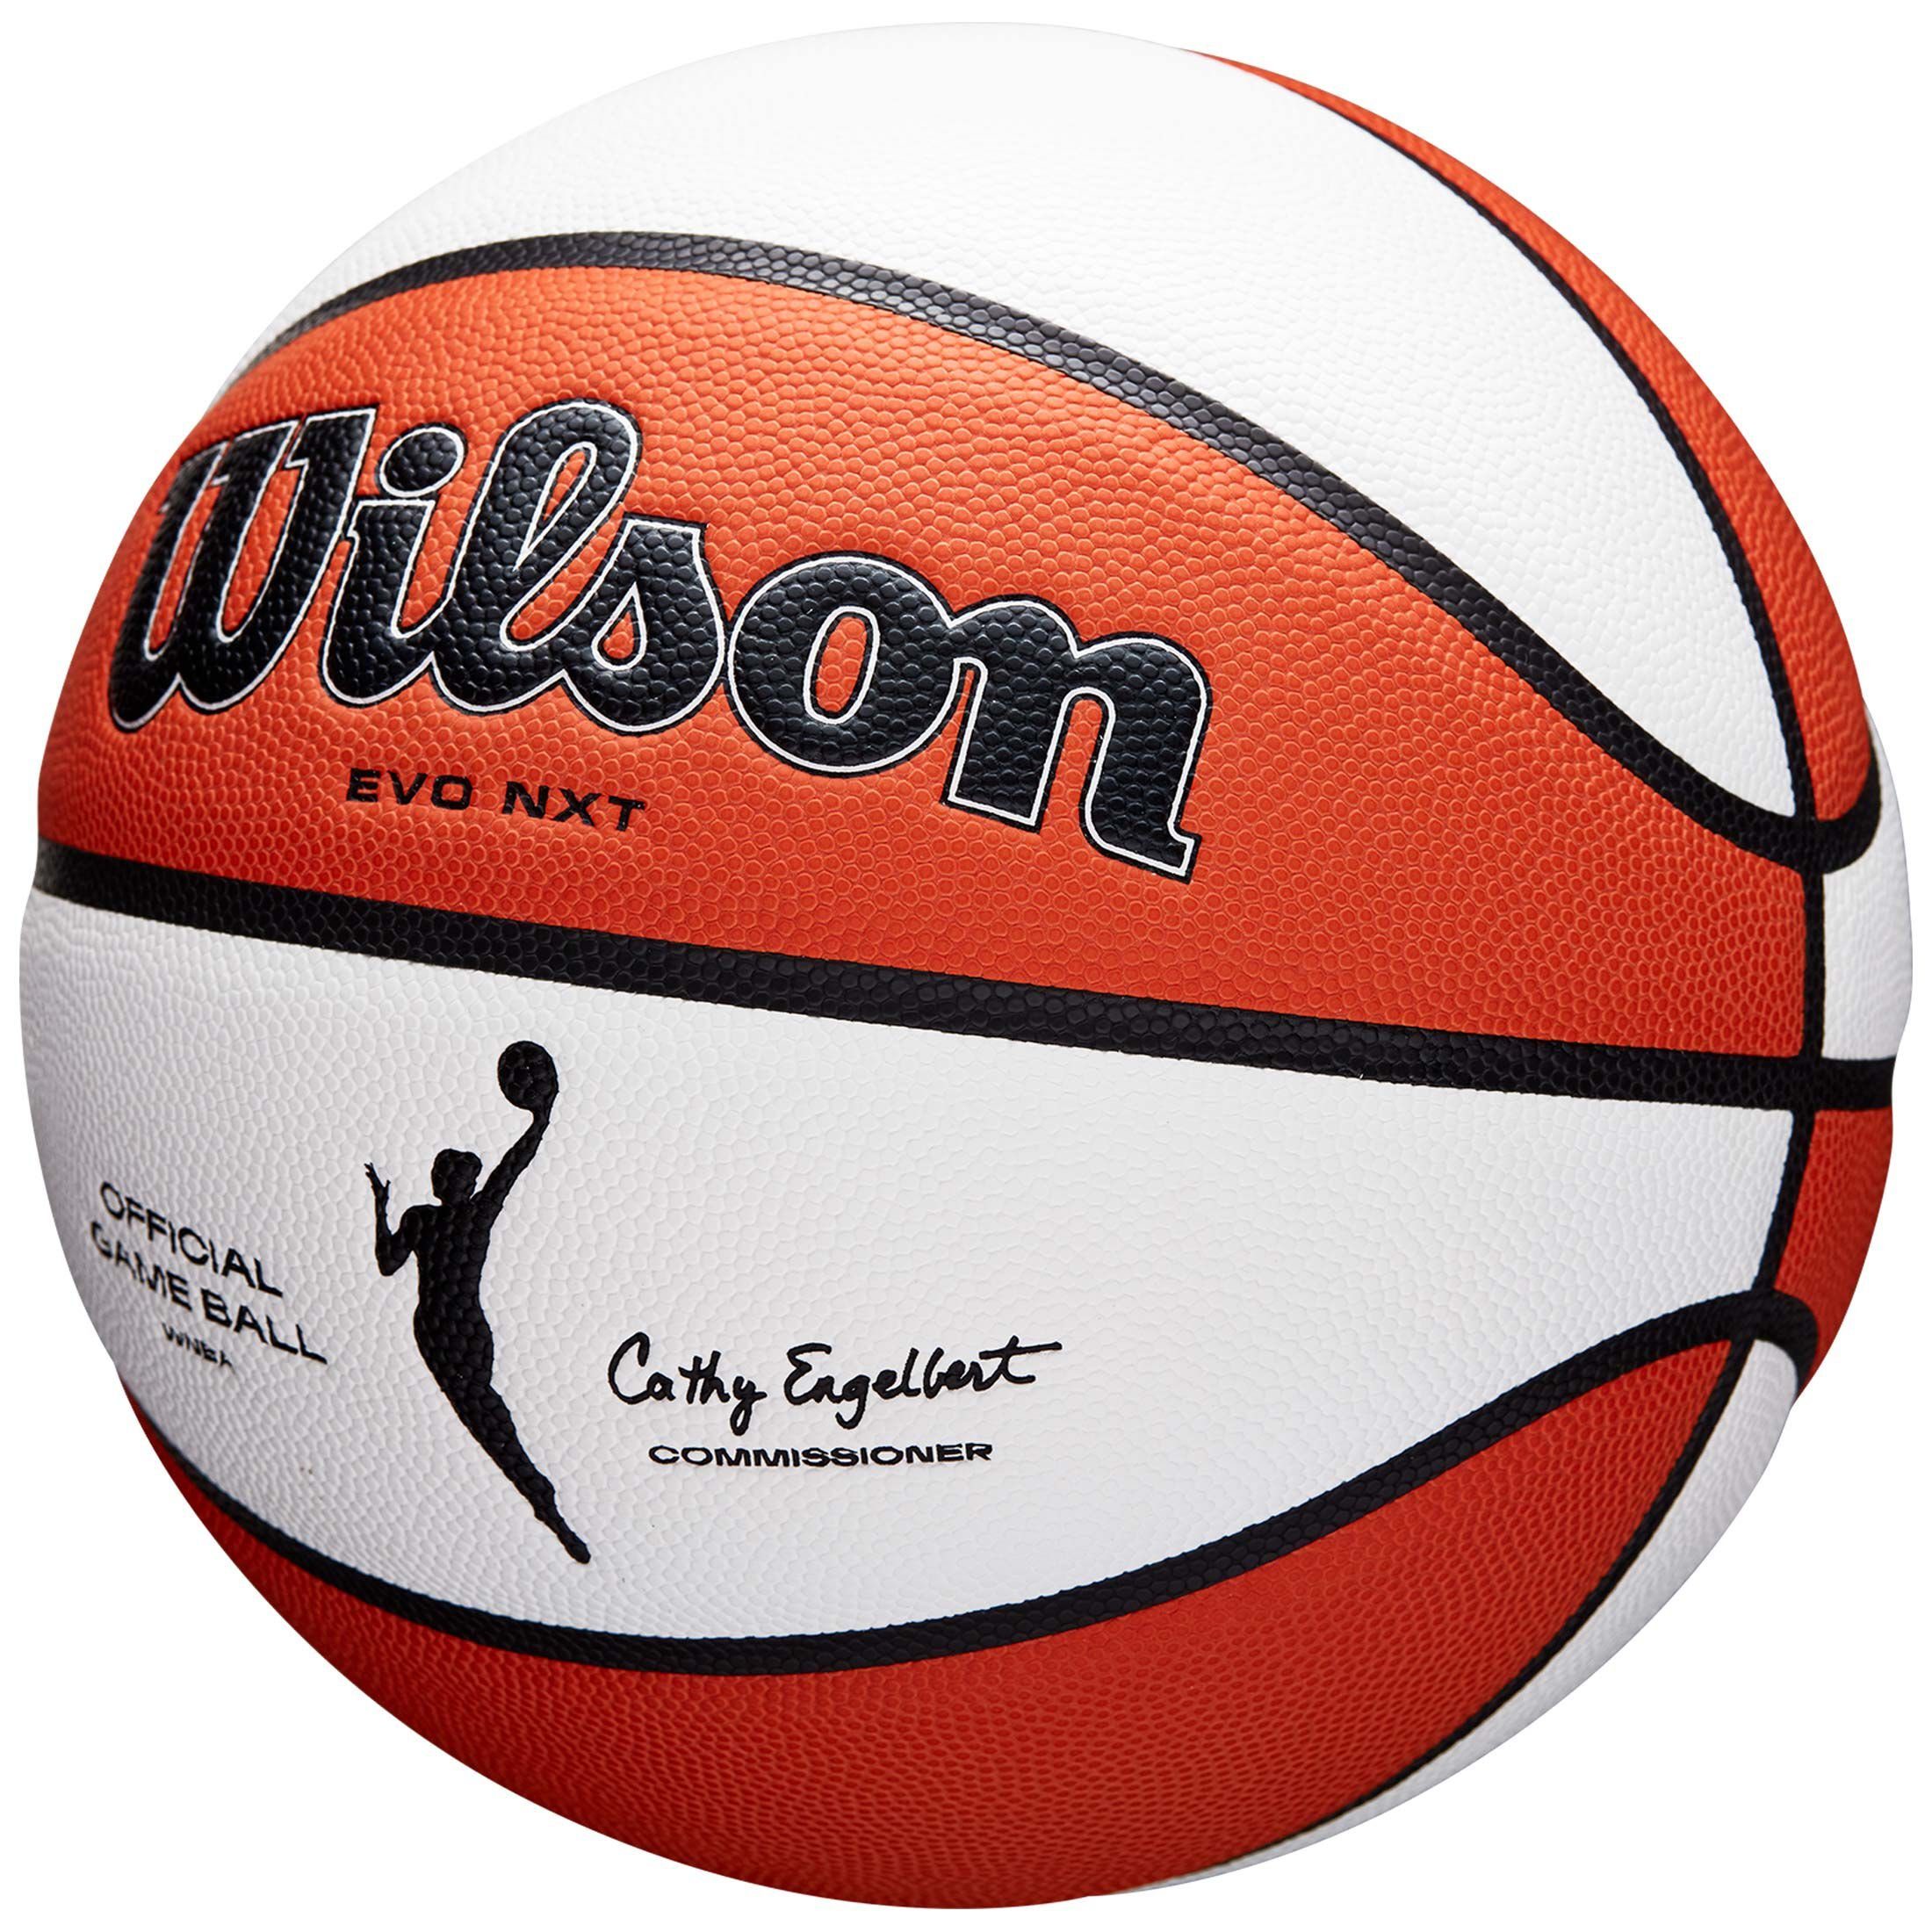 Official Wilson Basketball Basketball Game WNBA